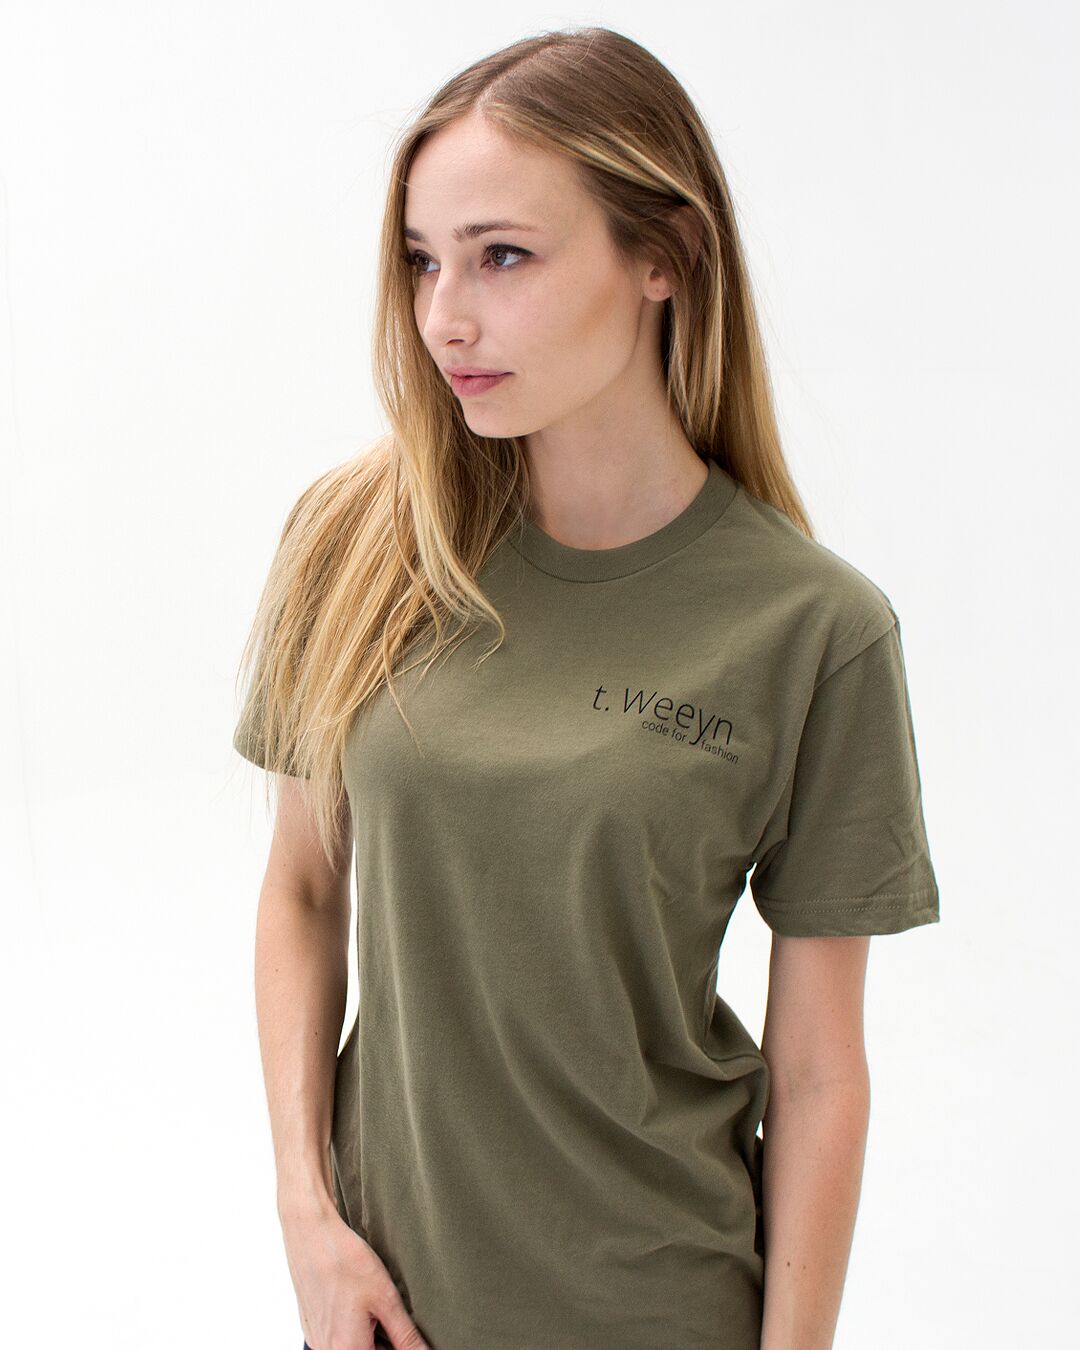 t. Weeyn Backbone Steel in ASCII code women's army green short sleeve shirt front view 